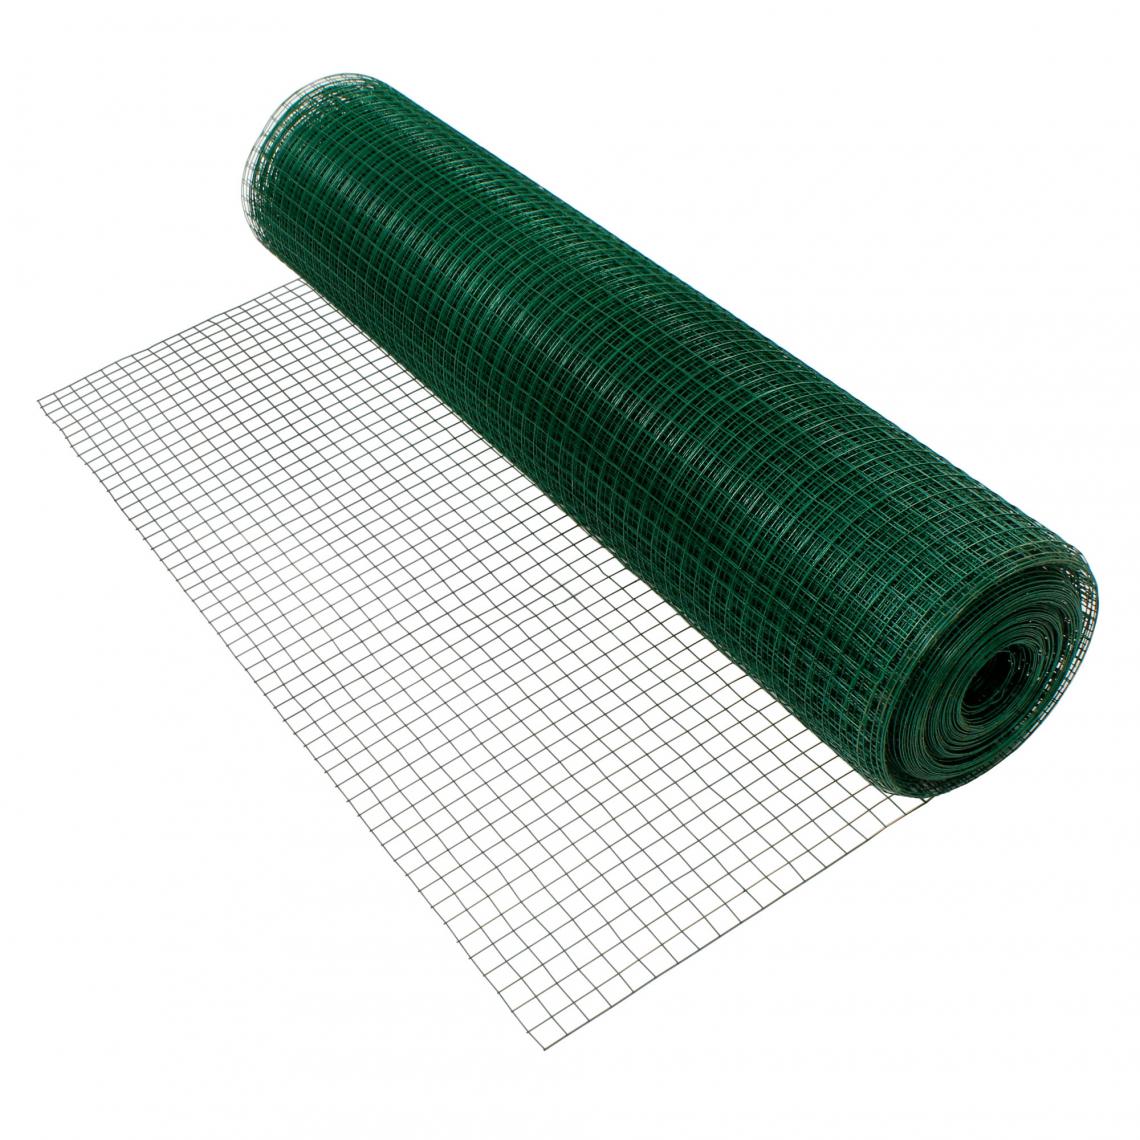 Ecd Germany - Grillage maille de jardin vert clôture fil volière flexible 0,7 mm 12x12 mm 25m - Clôture grillagée